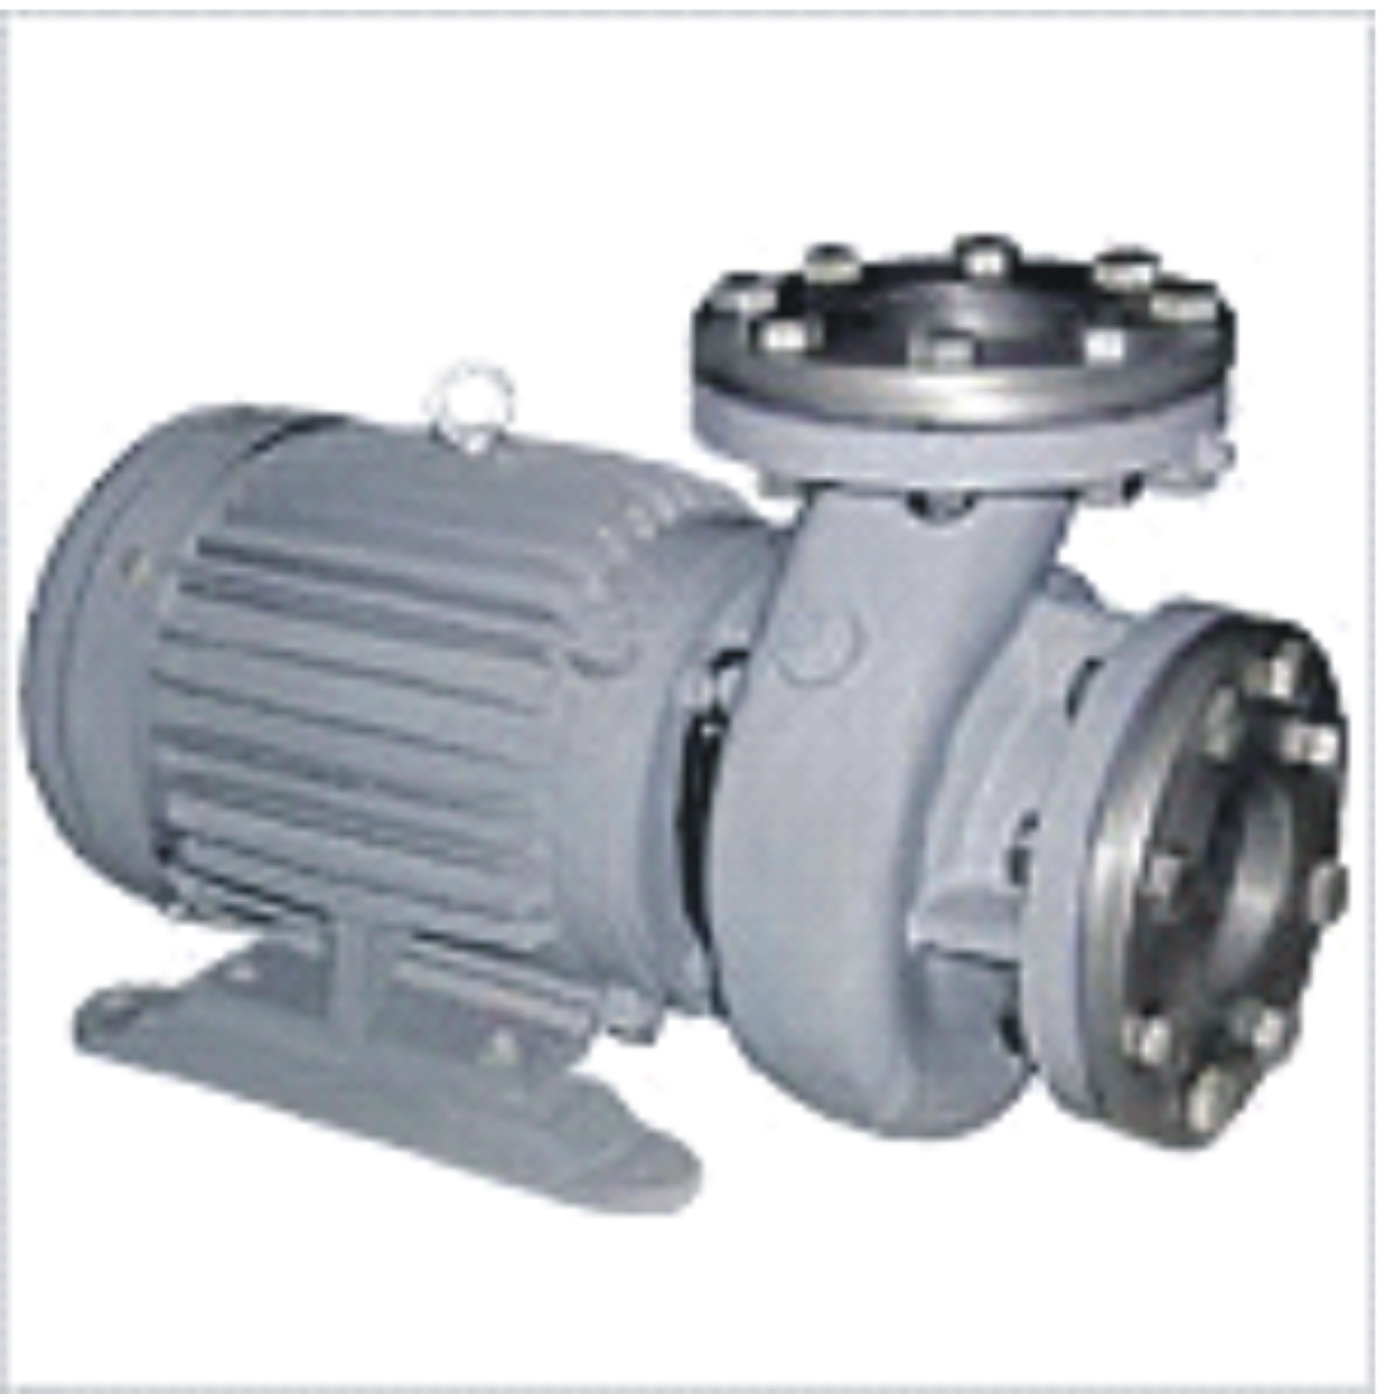 Eddy current pump motor